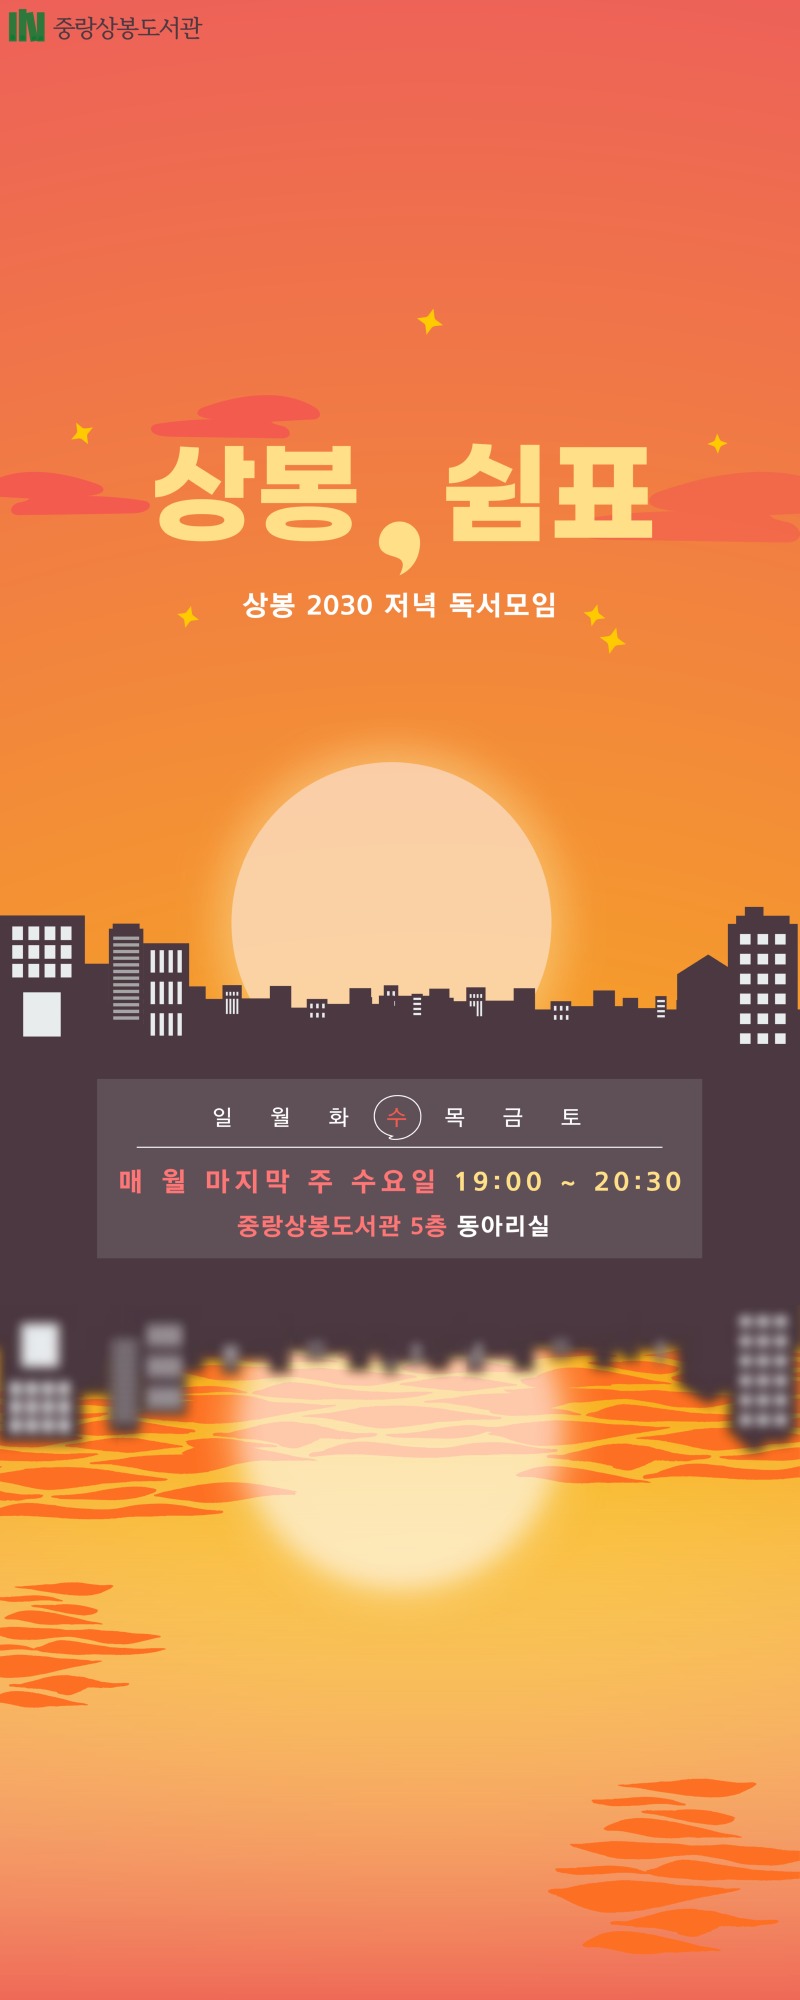 상봉, 쉼표 동아리 홍보물 세로 배너형.jpg